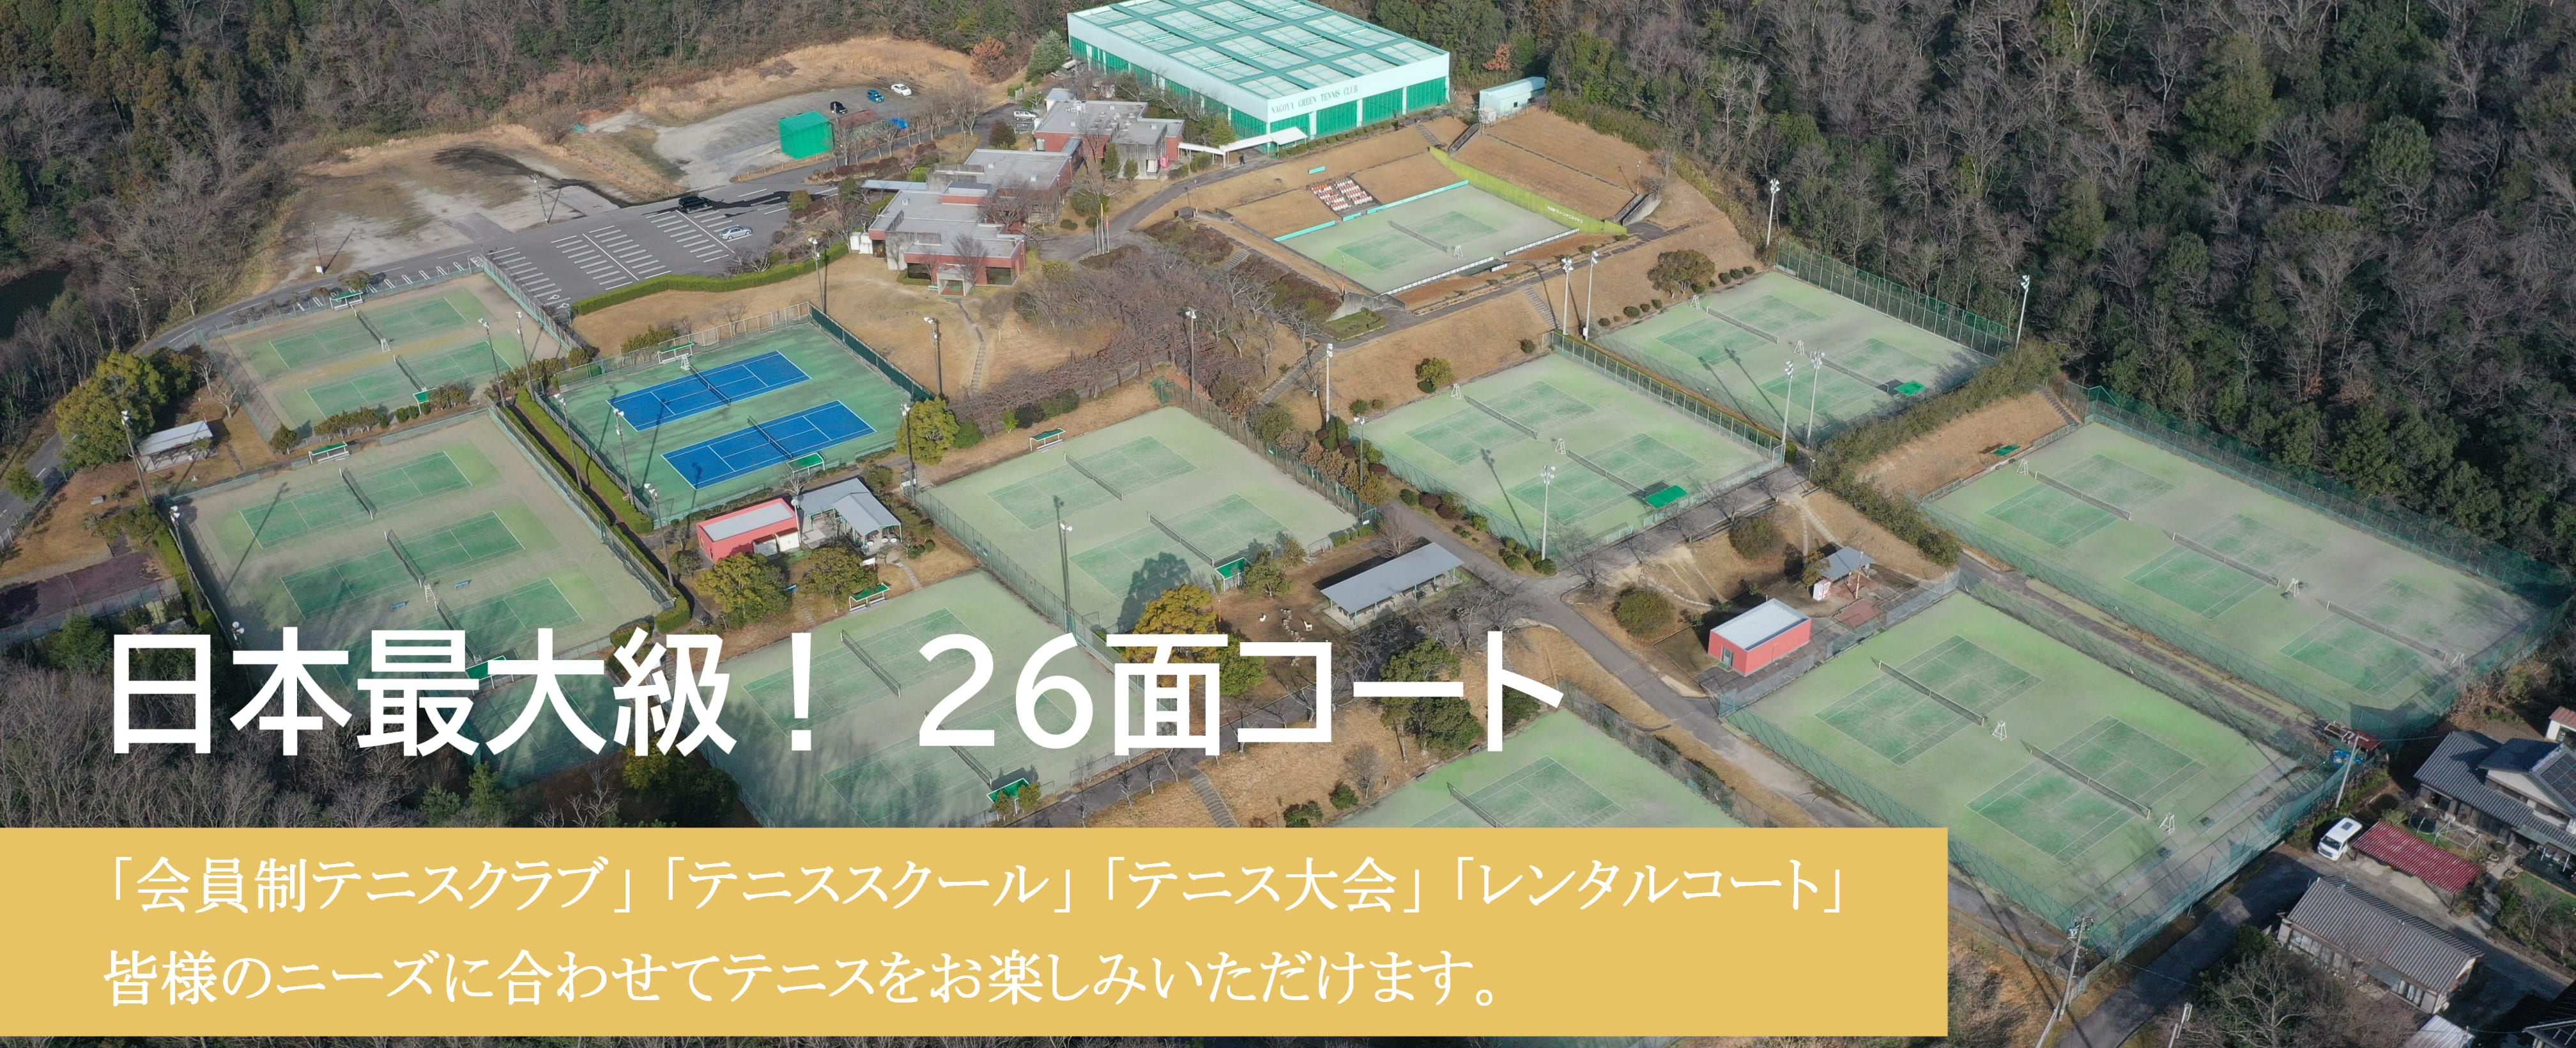 名古屋グリーンテニスクラブ